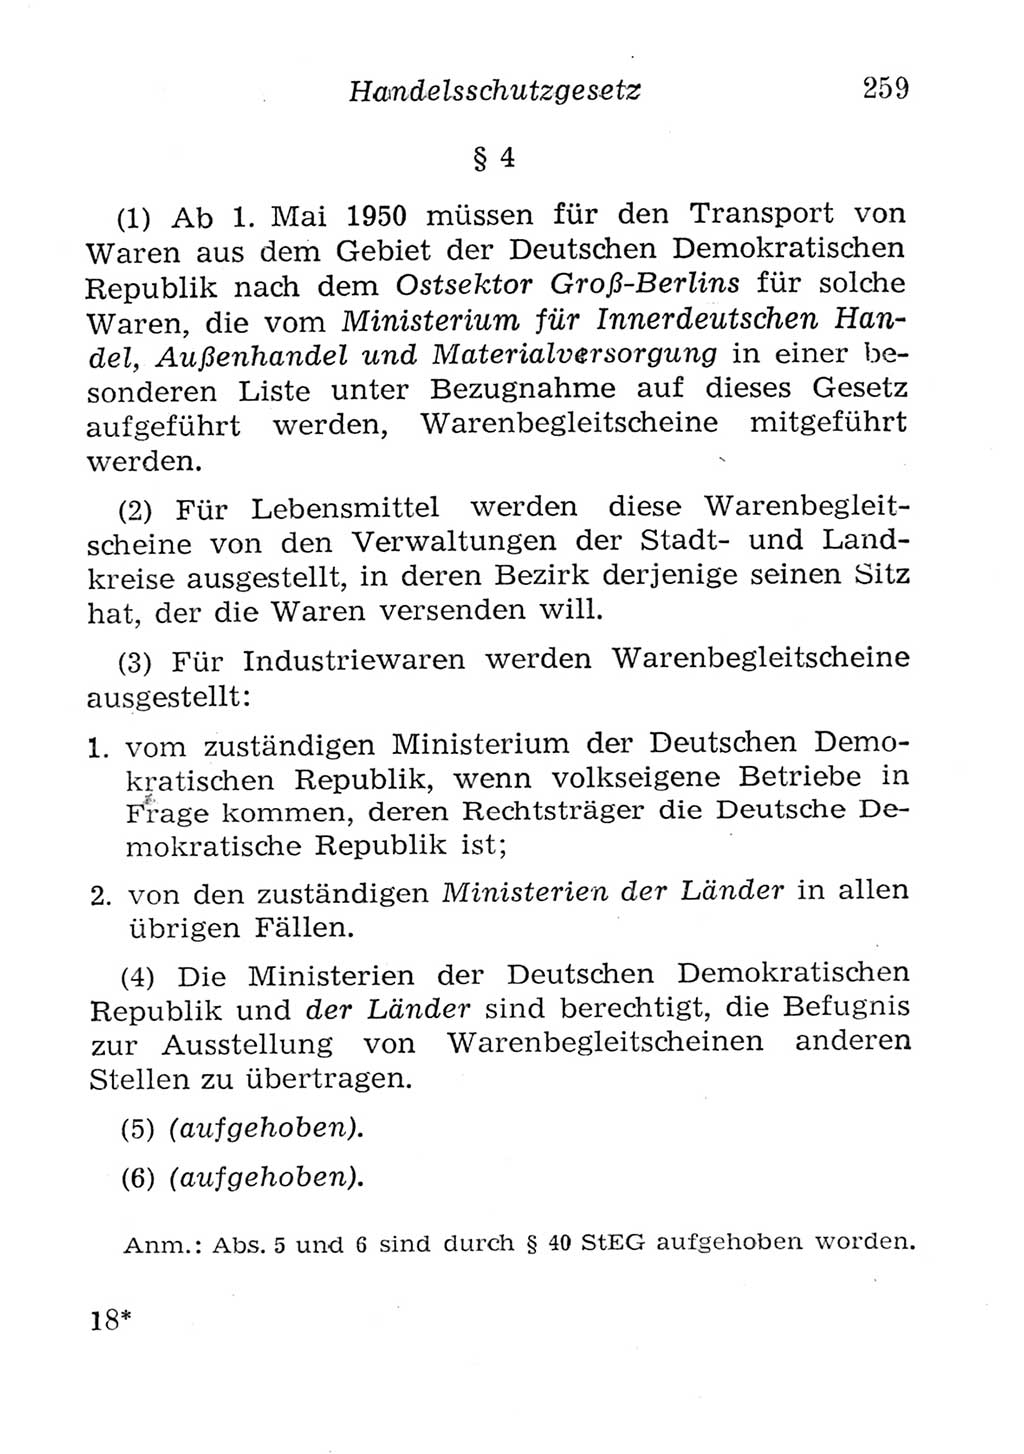 Strafgesetzbuch (StGB) und andere Strafgesetze [Deutsche Demokratische Republik (DDR)] 1957, Seite 259 (StGB Strafges. DDR 1957, S. 259)